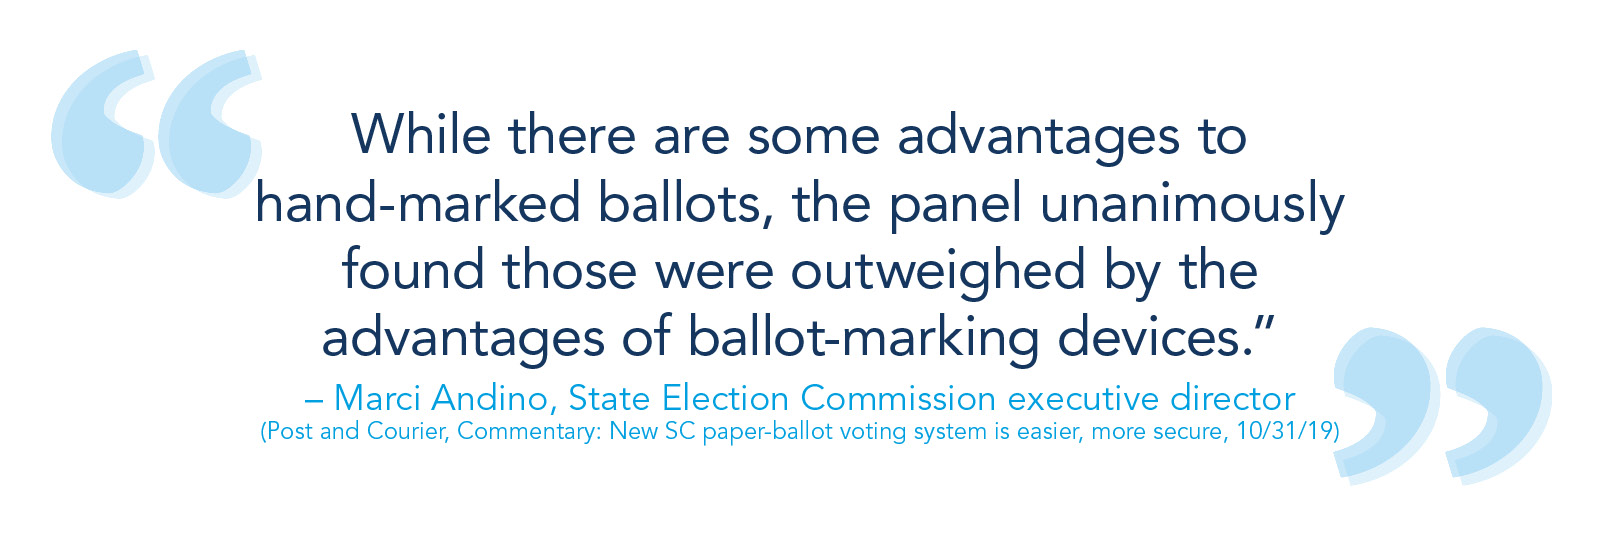 “虽然手工标记选票有一些好处，但该委员会一致认为，这些好处要被标记选票装置的好处所压倒。——Marci Andino(州选举委员会执行主任)(邮政及速递、解说:新的SC纸票投票系统更方便、更安全，10/31/19)